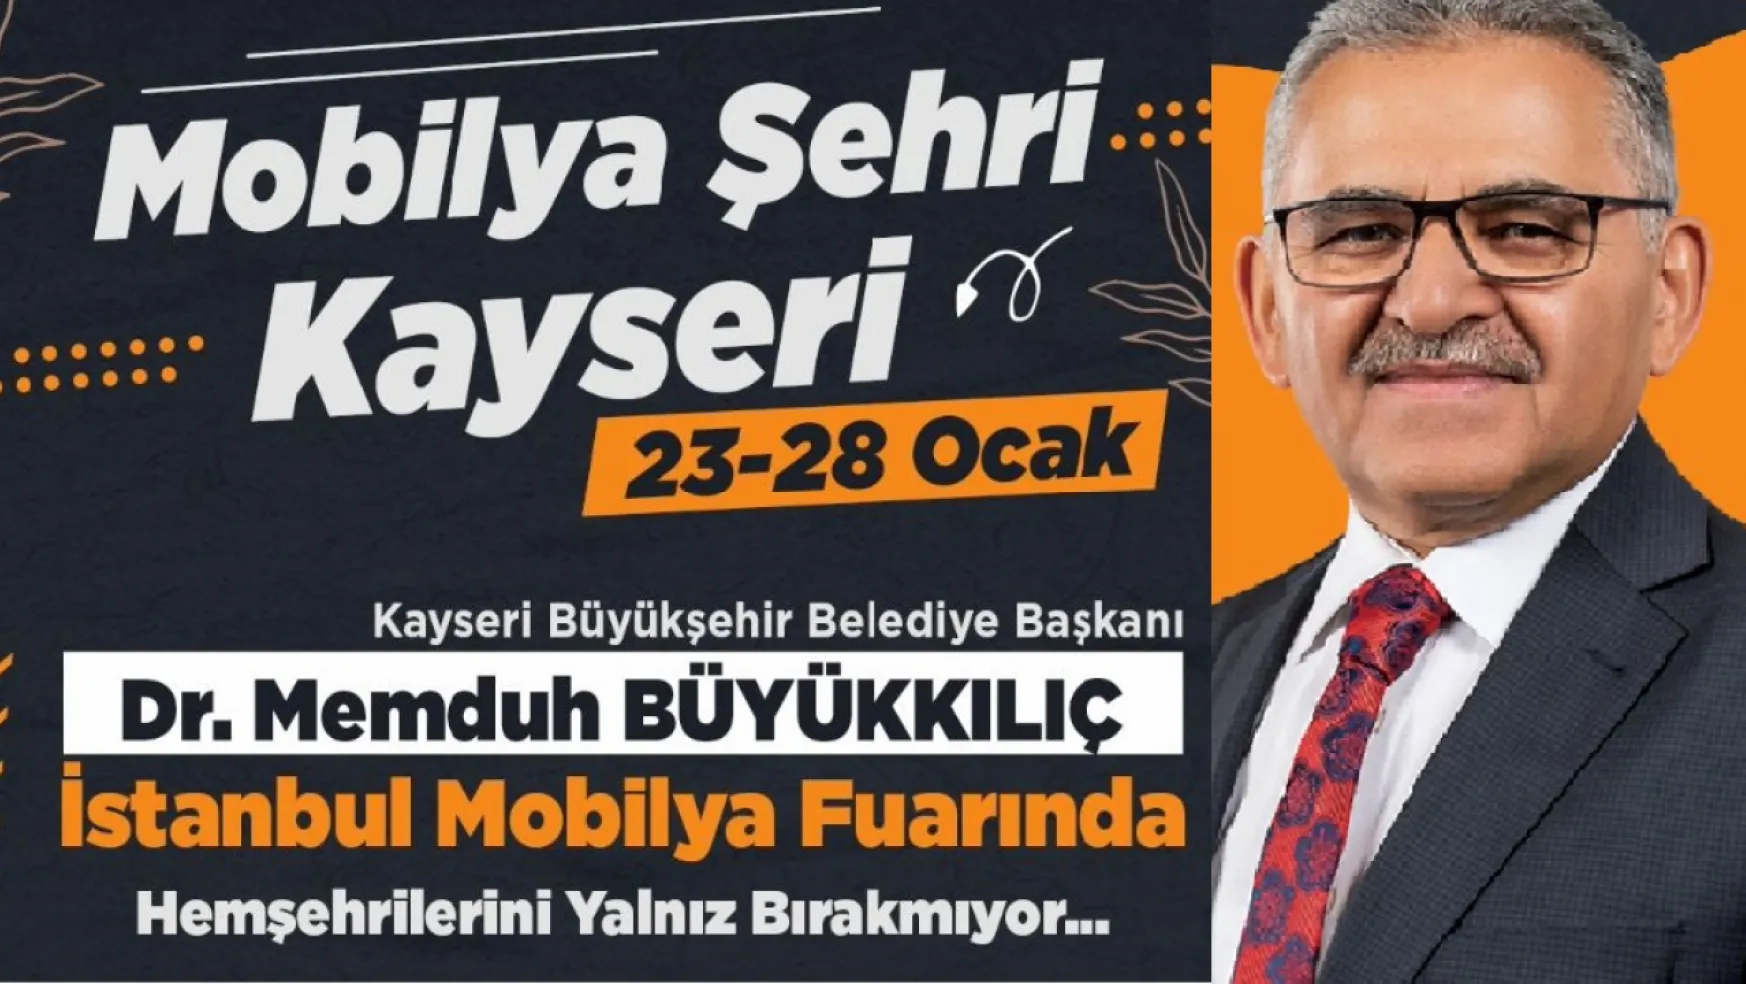 Kayseri Büyükşehir Belediye Başkanı Dr. Memduh Büyükkılıç, İstanbul Mobilya Fuarı’na Katılacak